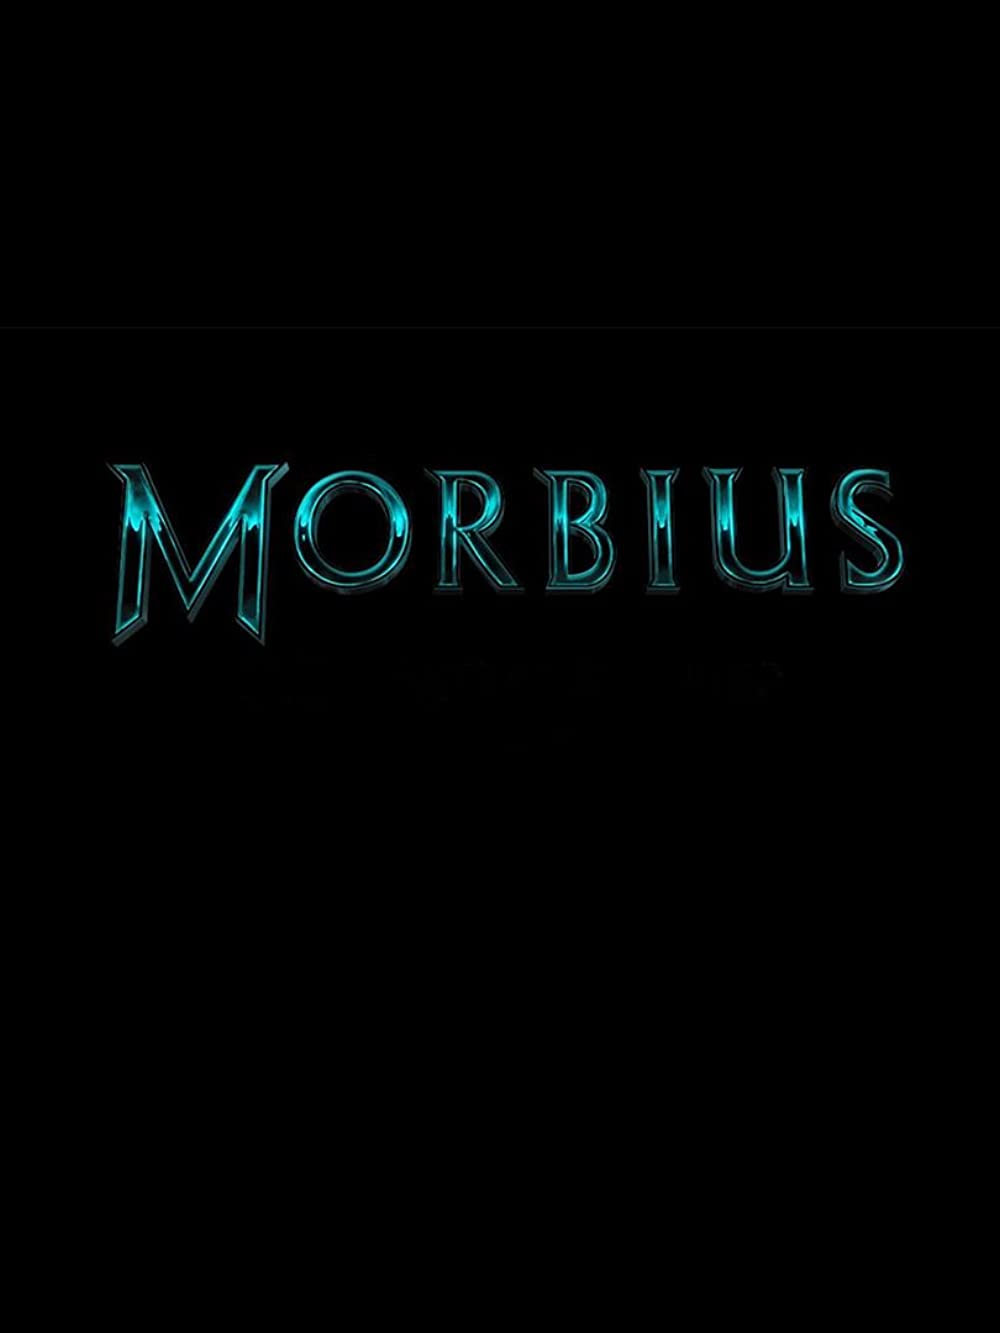 morbius 6227c7f0d1a60